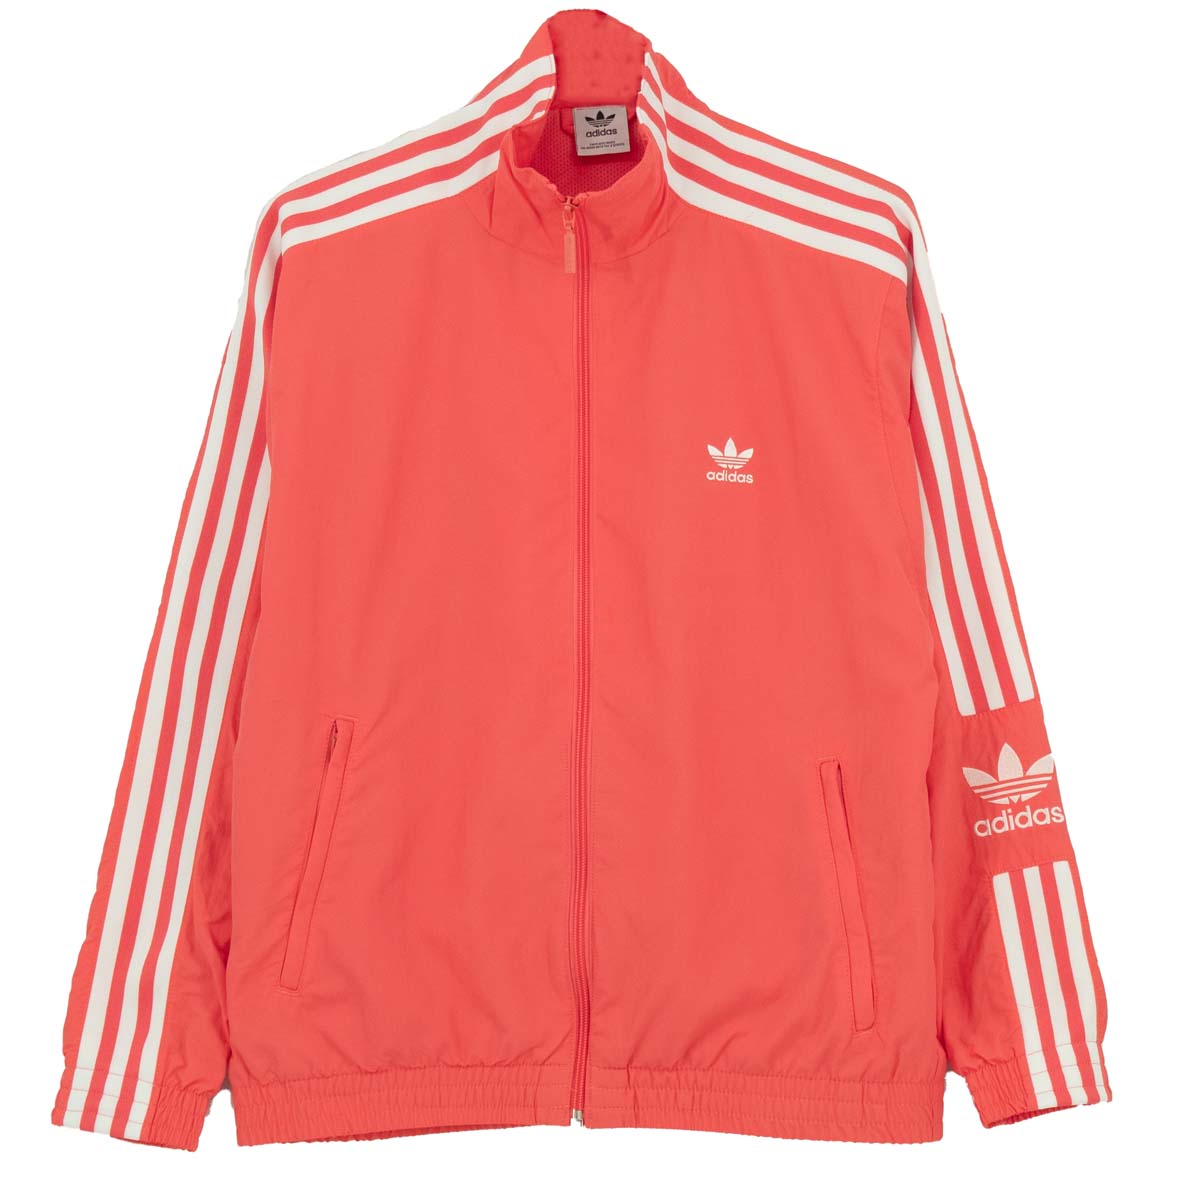 Спортивная куртка adidas Jacke Track Top, розовый